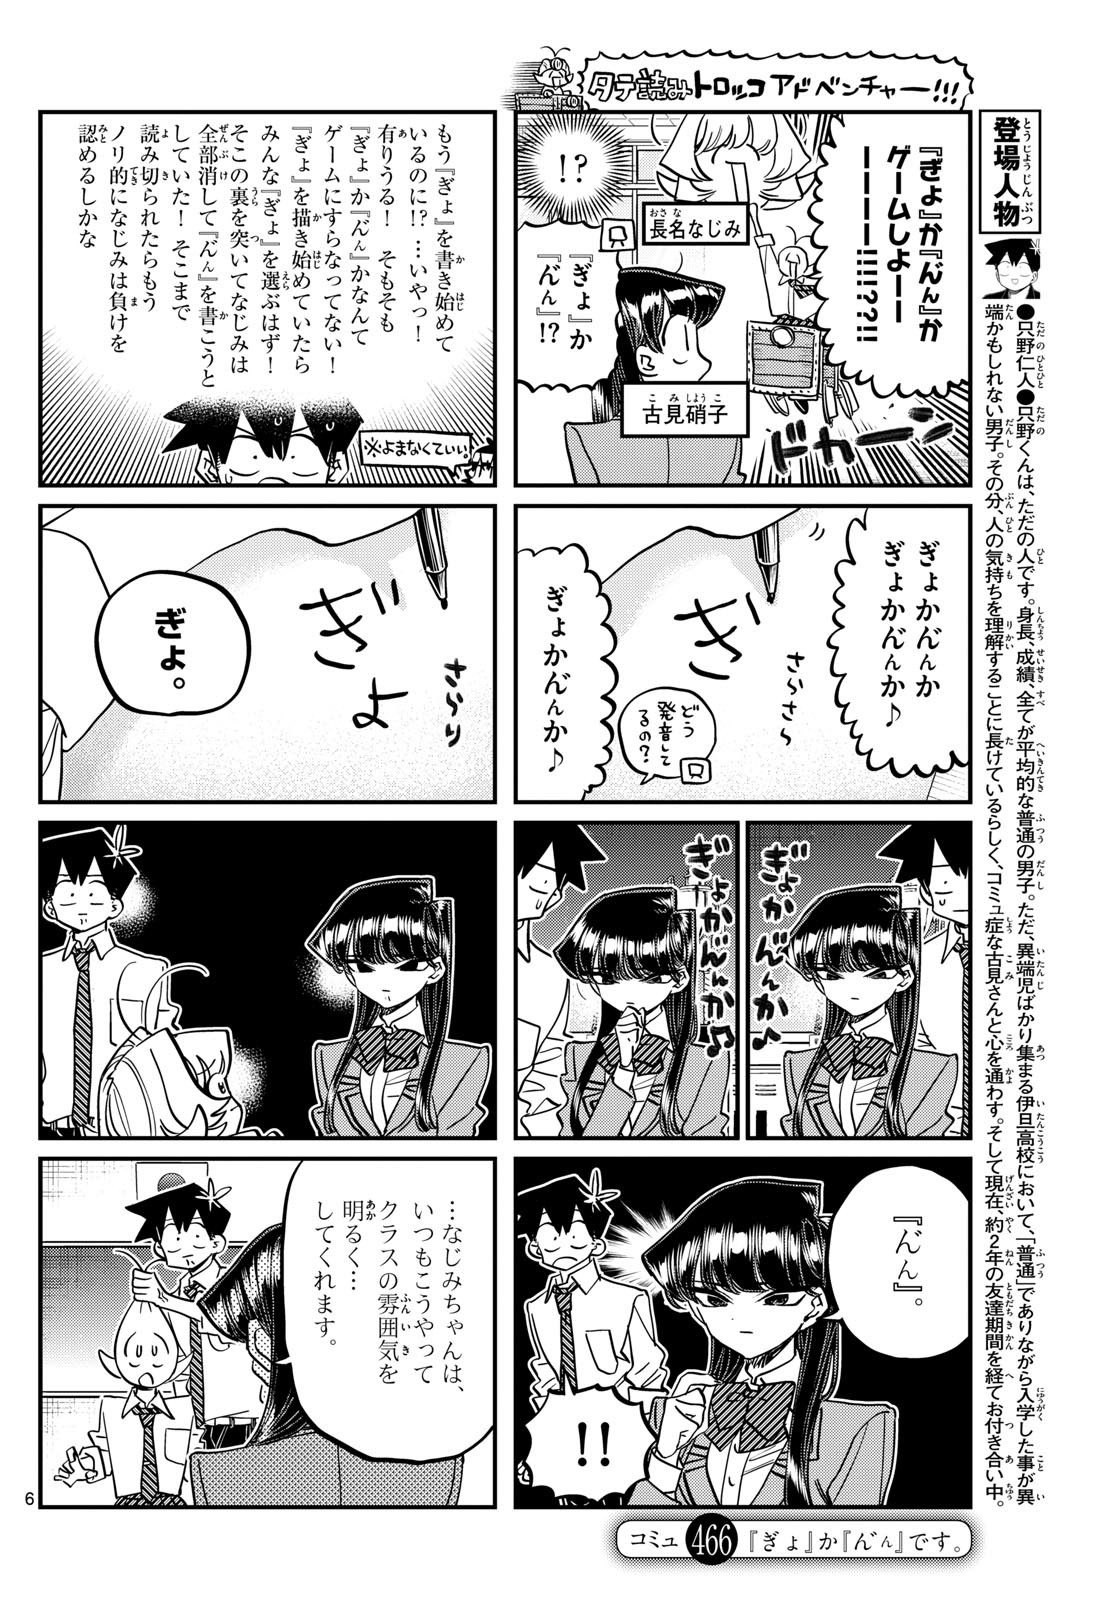 Komi-san wa Komyushou Desu - Chapter 466 - Page 1